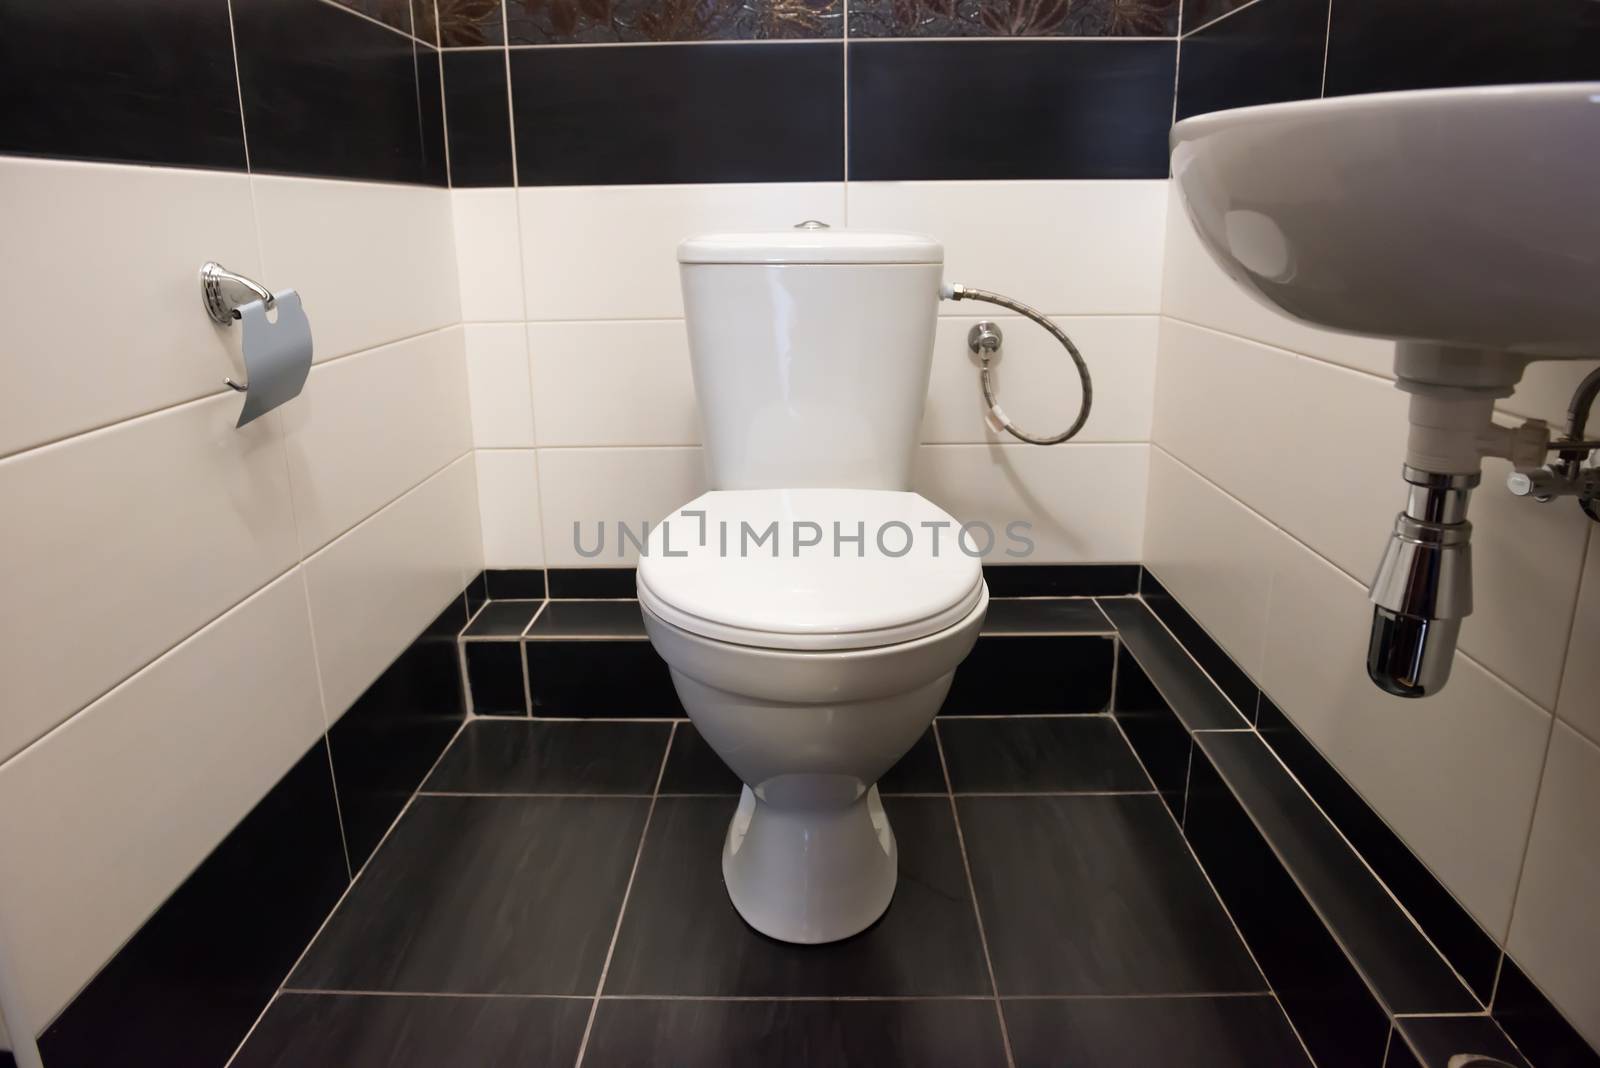 Home flush toilet by vapi